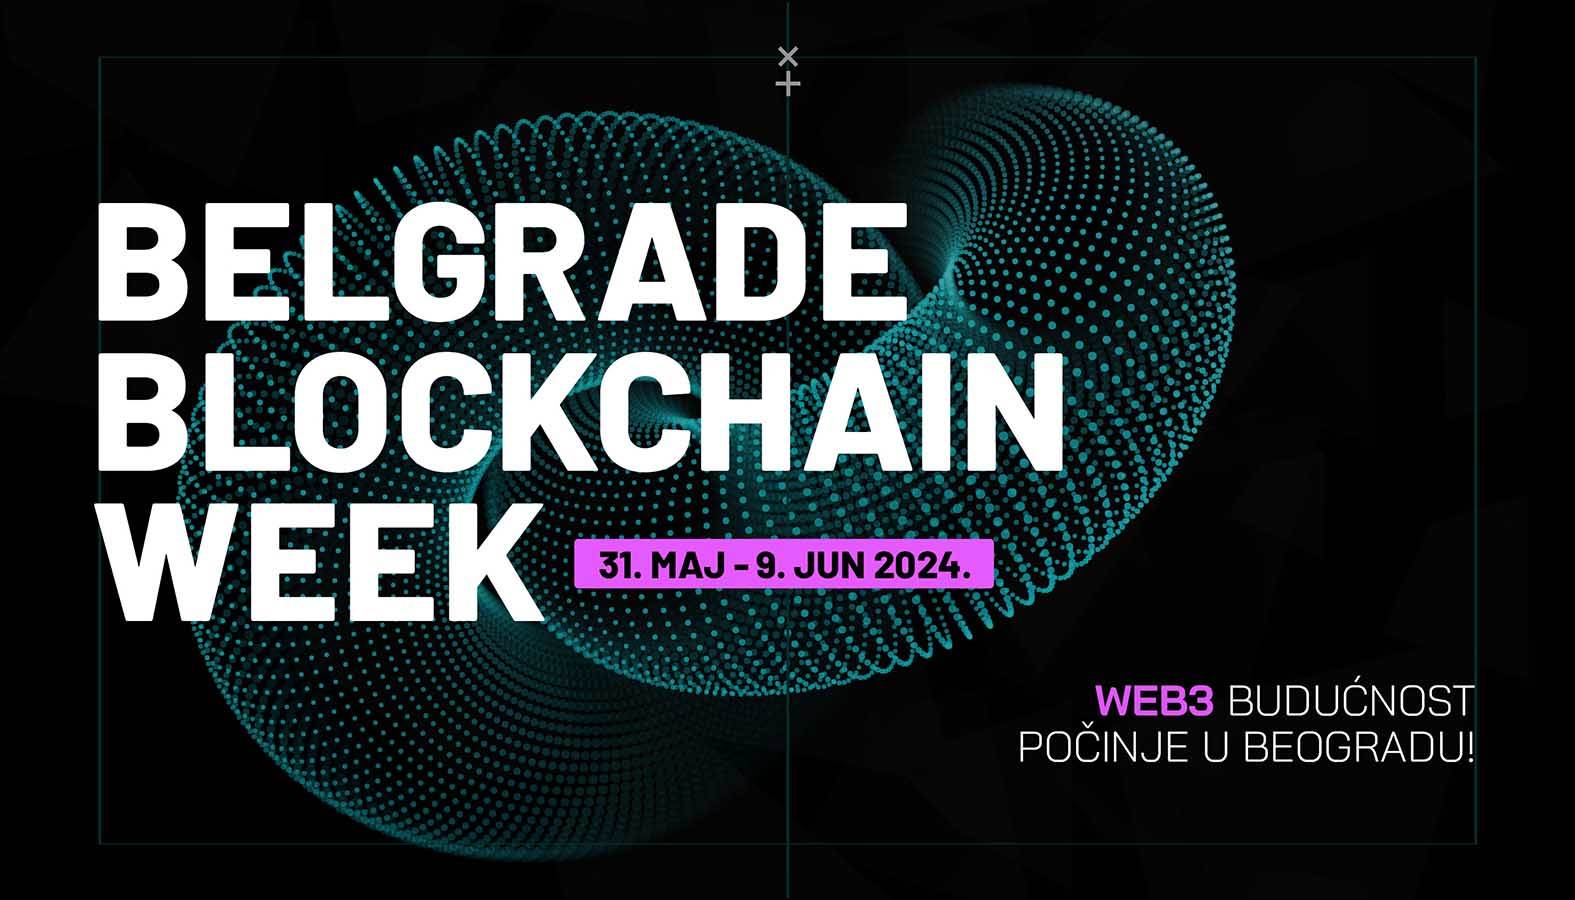  Belgrade Blockchain Week web3 događaj 